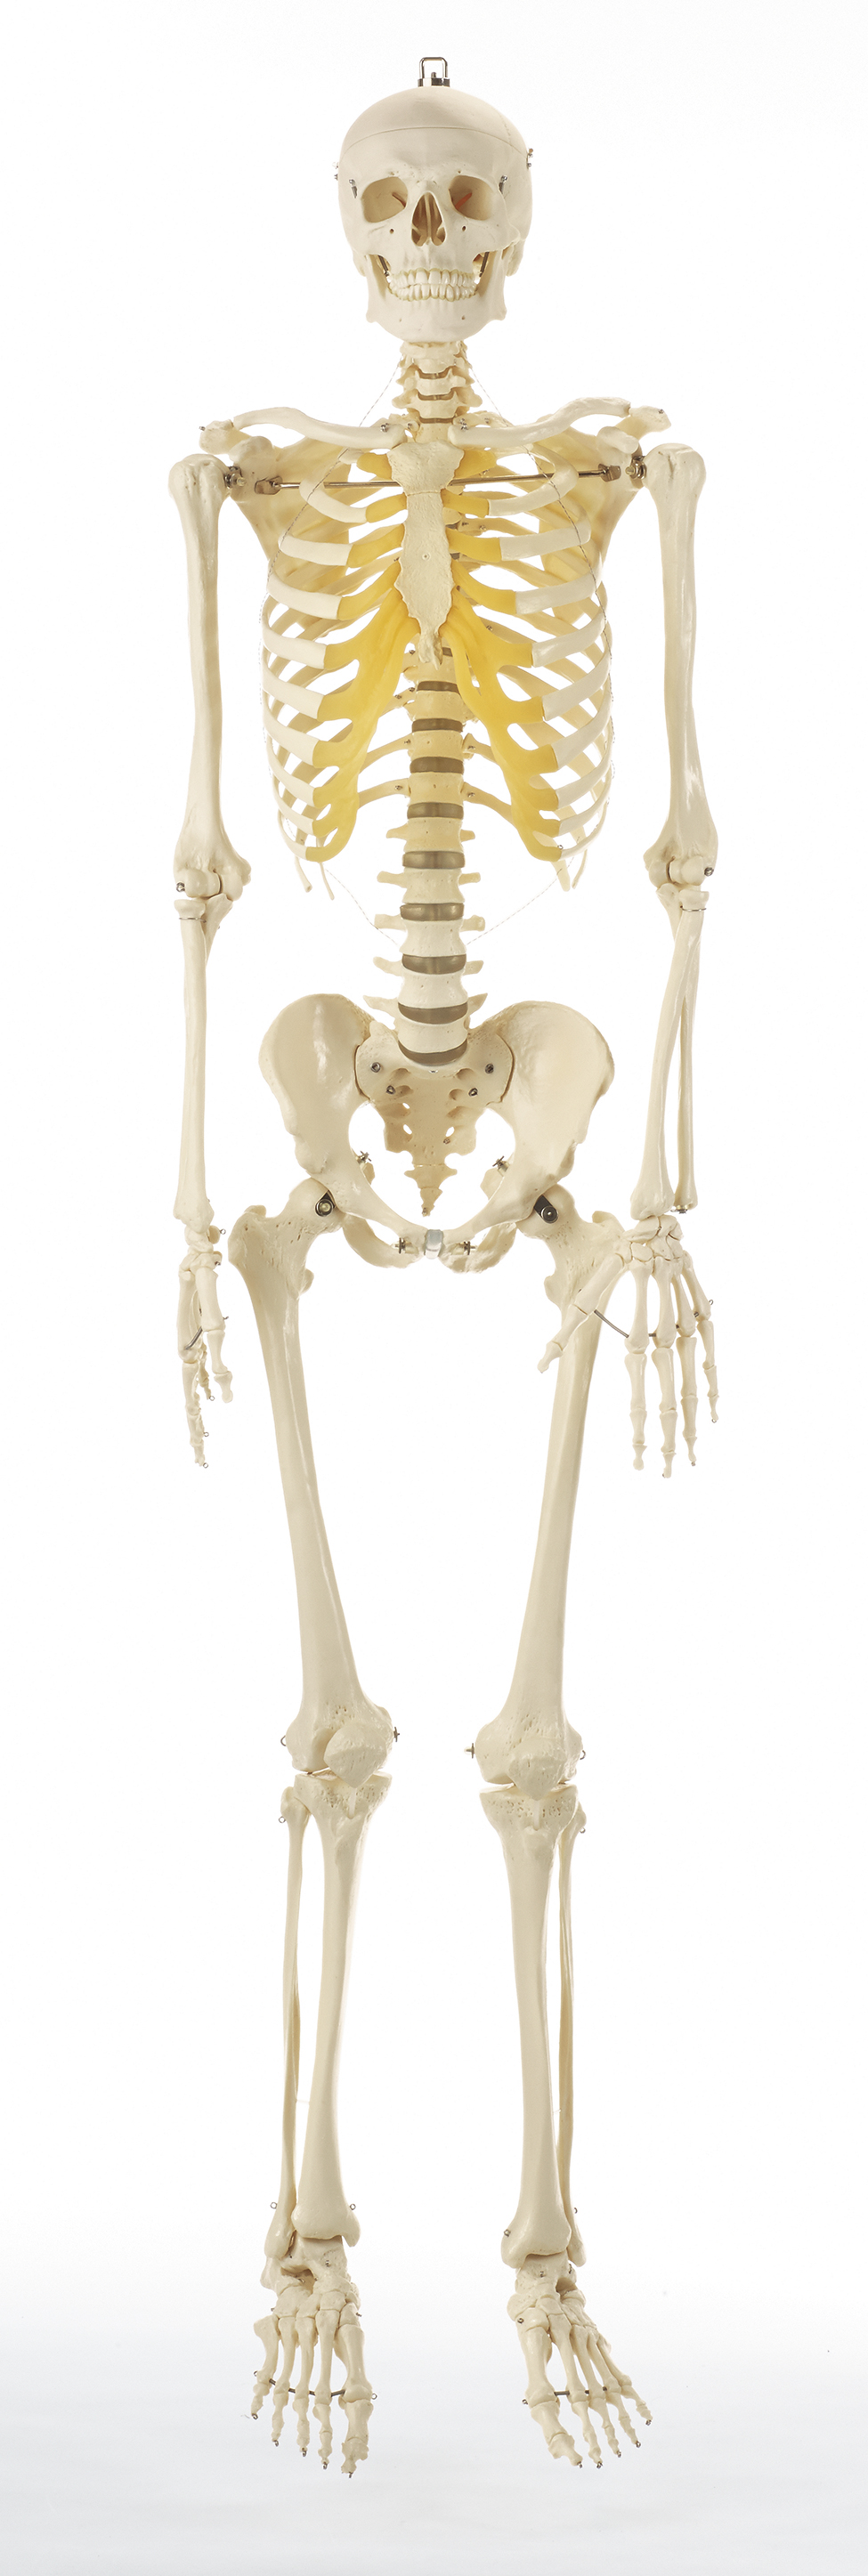 Künstliches Homo-Skelett, Bestellnummer QS 10/3